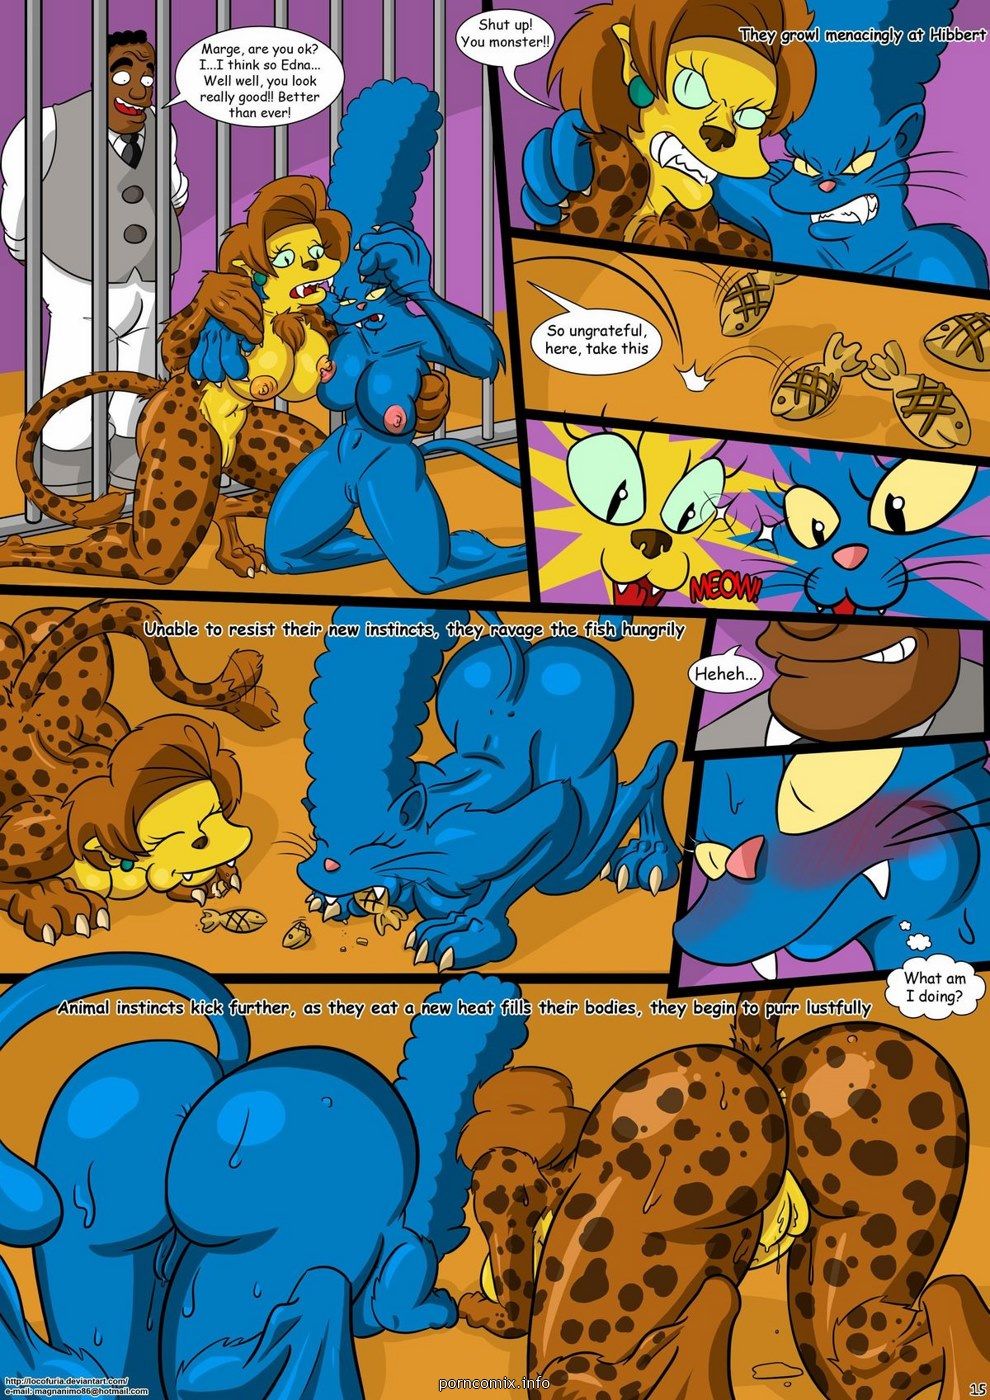 Kogeikun, Simpsons - Treehouse of Horror 1 page 16